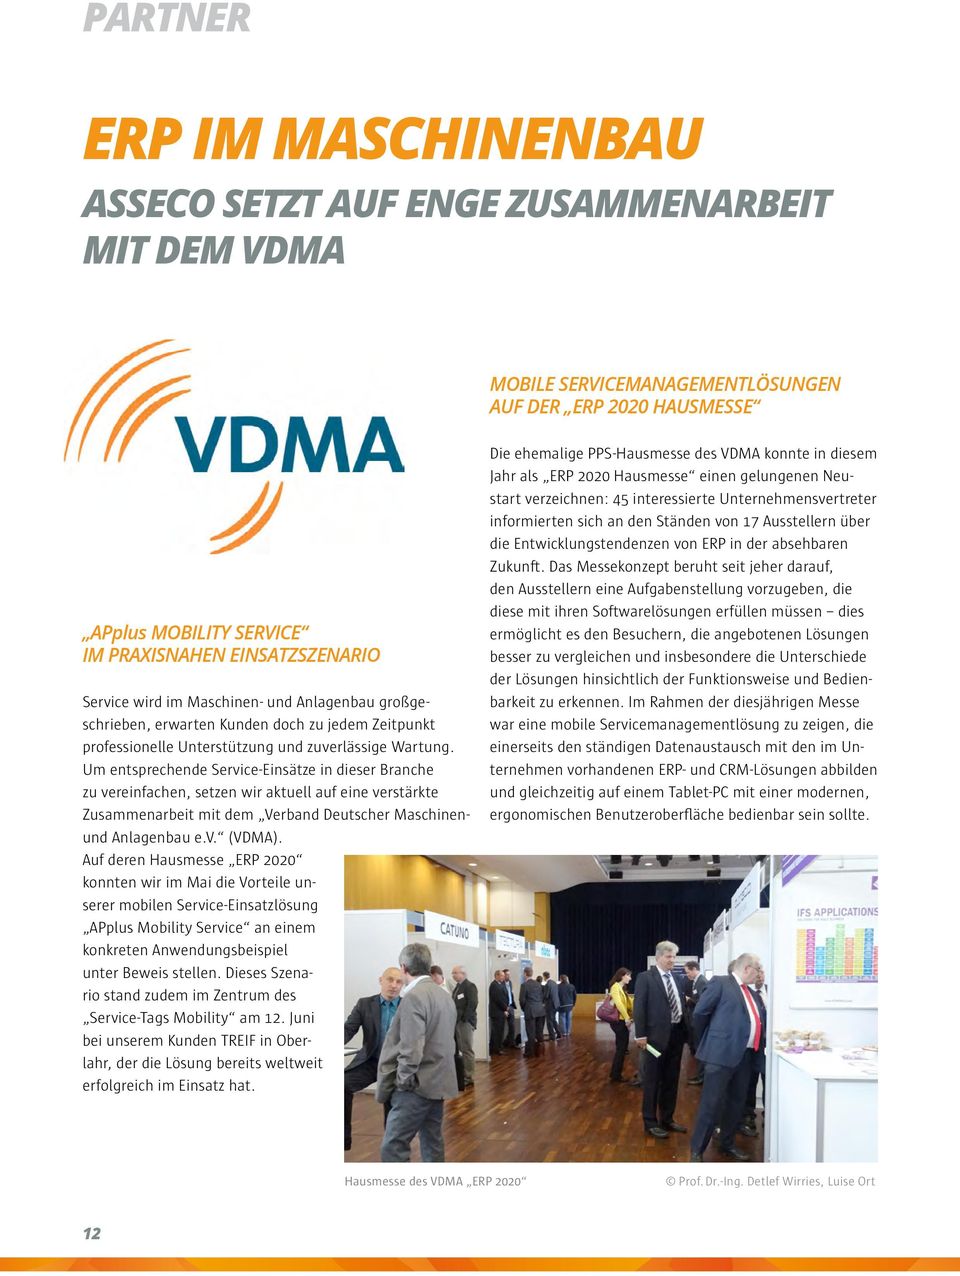 Um entsprechende Service-Einsätze in dieser Branche zu vereinfachen, setzen wir aktuell auf eine verstärkte Zusammenarbeit mit dem Verband Deutscher Maschinenund Anlagenbau e.v. (VDMA).